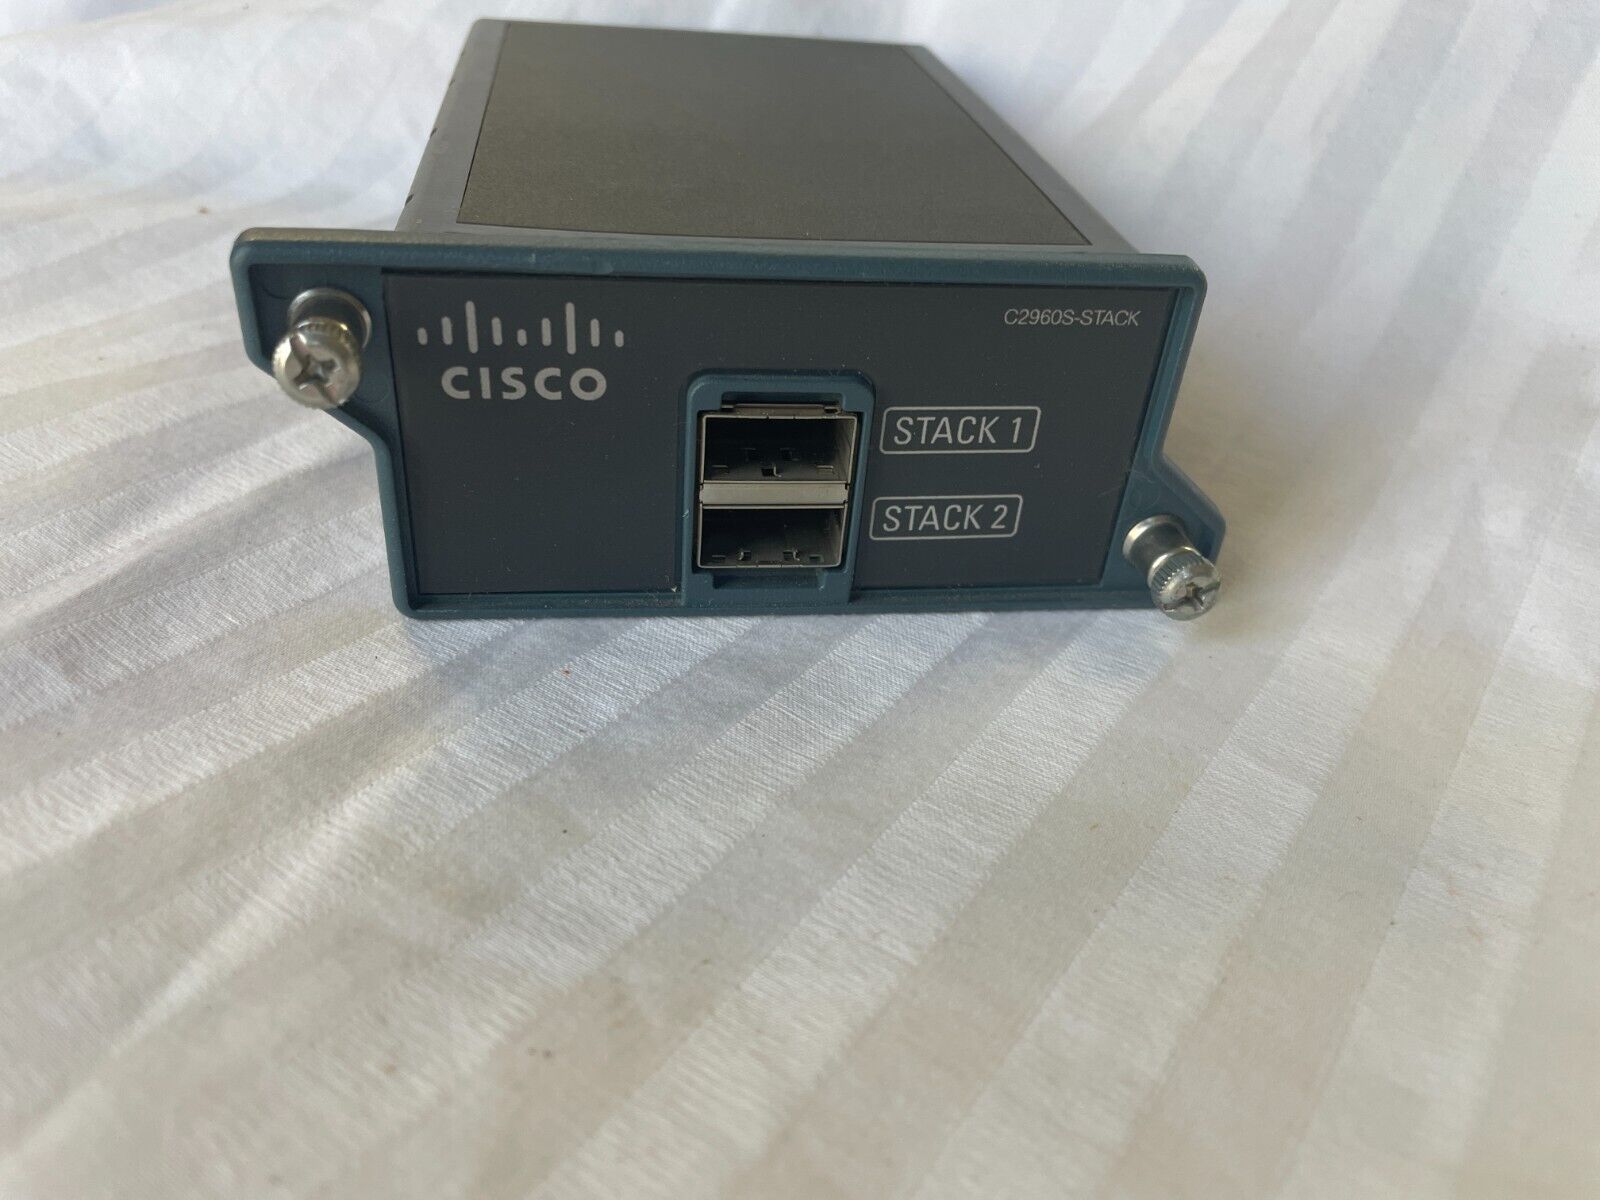 Cisco C2960S-STACK CATALYST 2960S FLEXSTACK STACKING MODULE